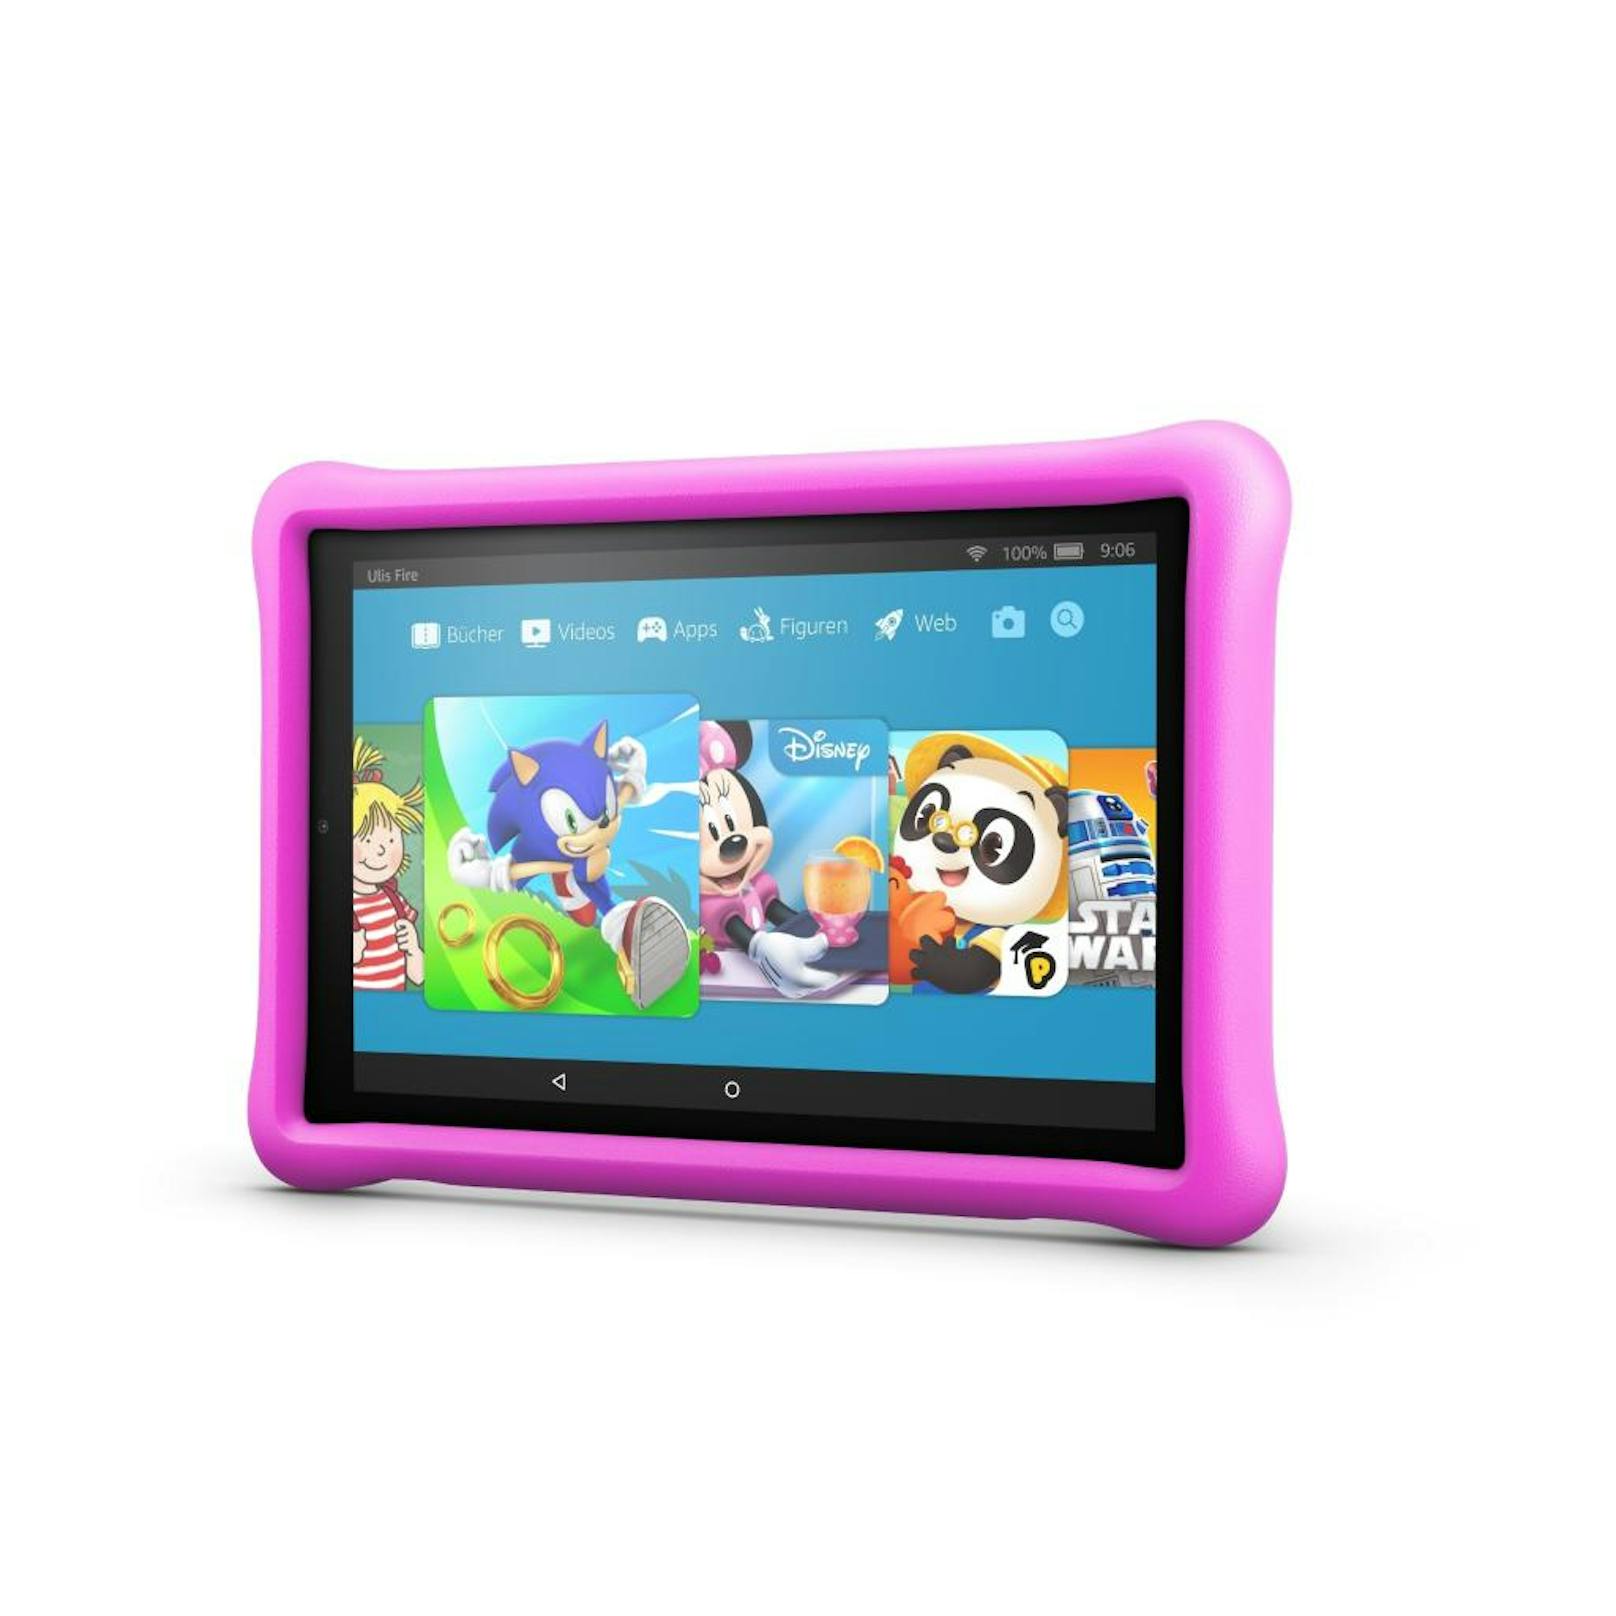 Die Fire HD 10 Kids Edition basiert auf dem herkömmlichen Fire HD 10 Tablet (10,1-Zoll 1080p Full HD Display, 32 GB interner erweiterbarer Speicher, bis zu 10 Stunden Akku-Laufzeit).